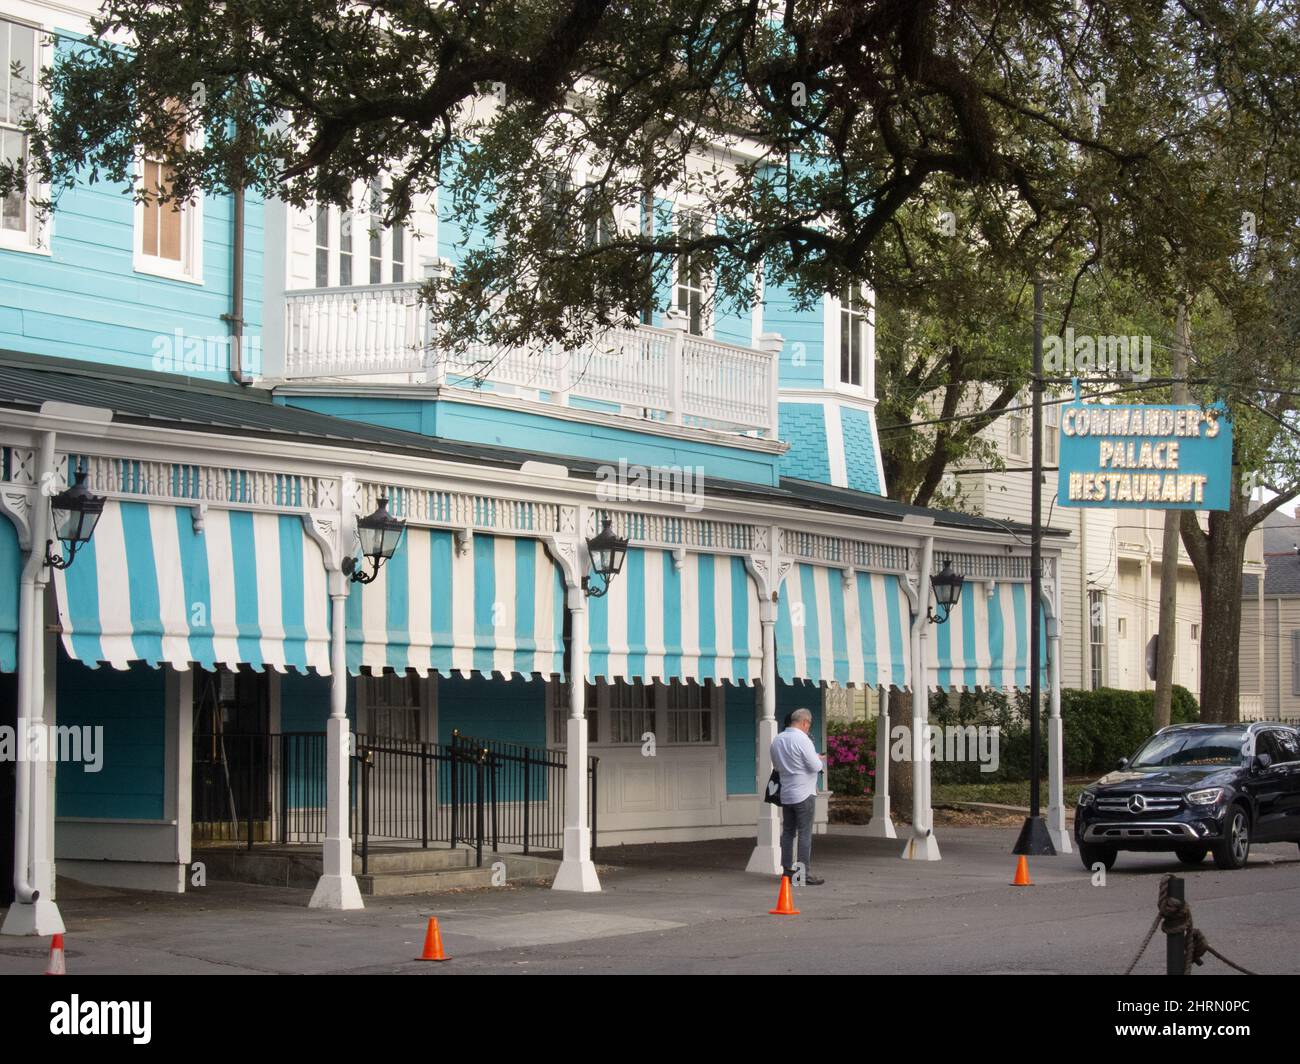 Restaurante Commander's Palace en el distrito de los jardines de Nueva Orleans. Foto de stock